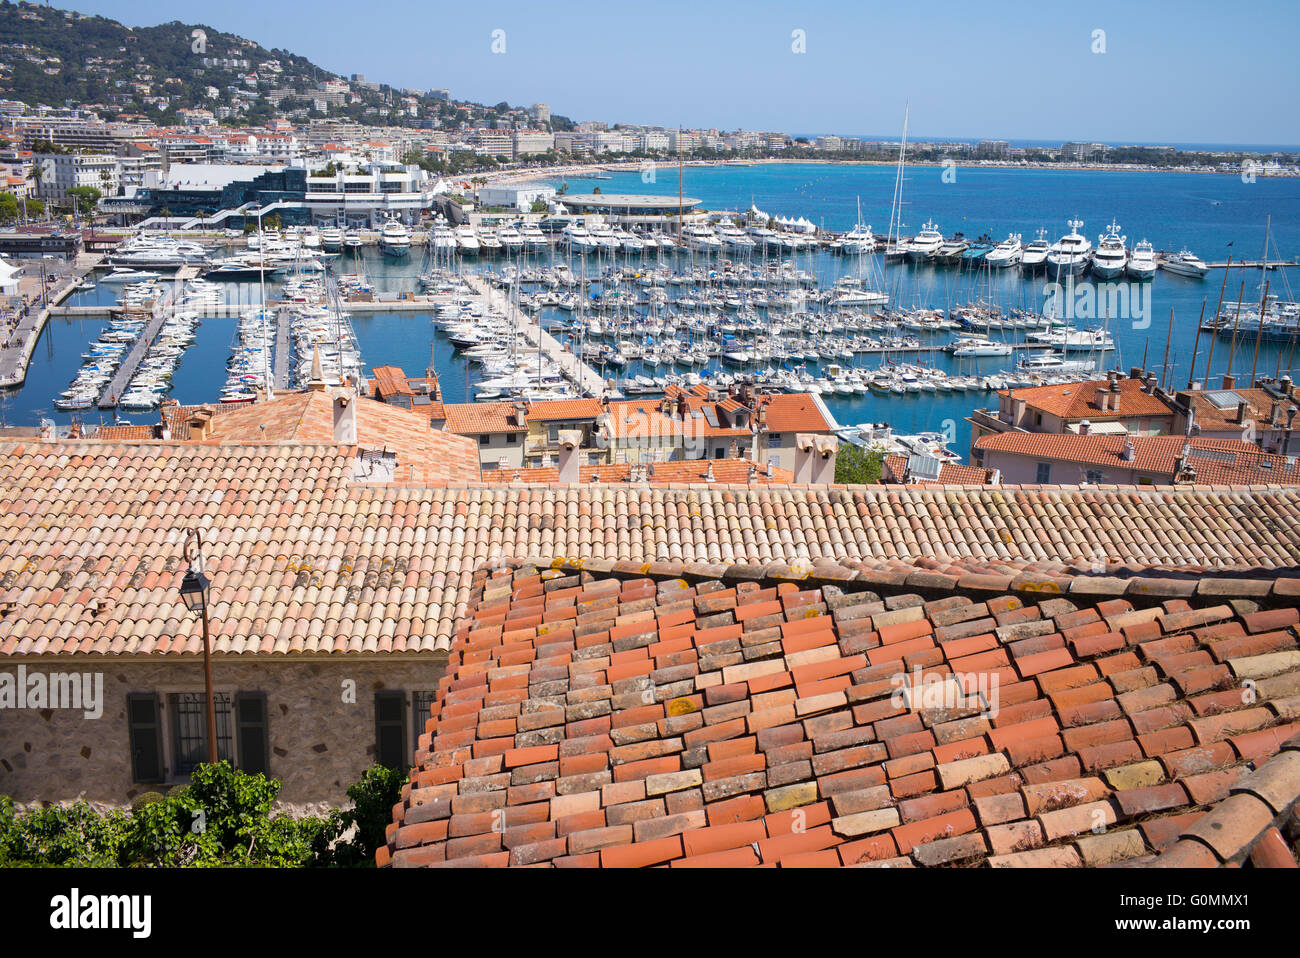 El puerto de Cannes, Francia, visto desde el casco antiguo de Le Suquet Foto de stock